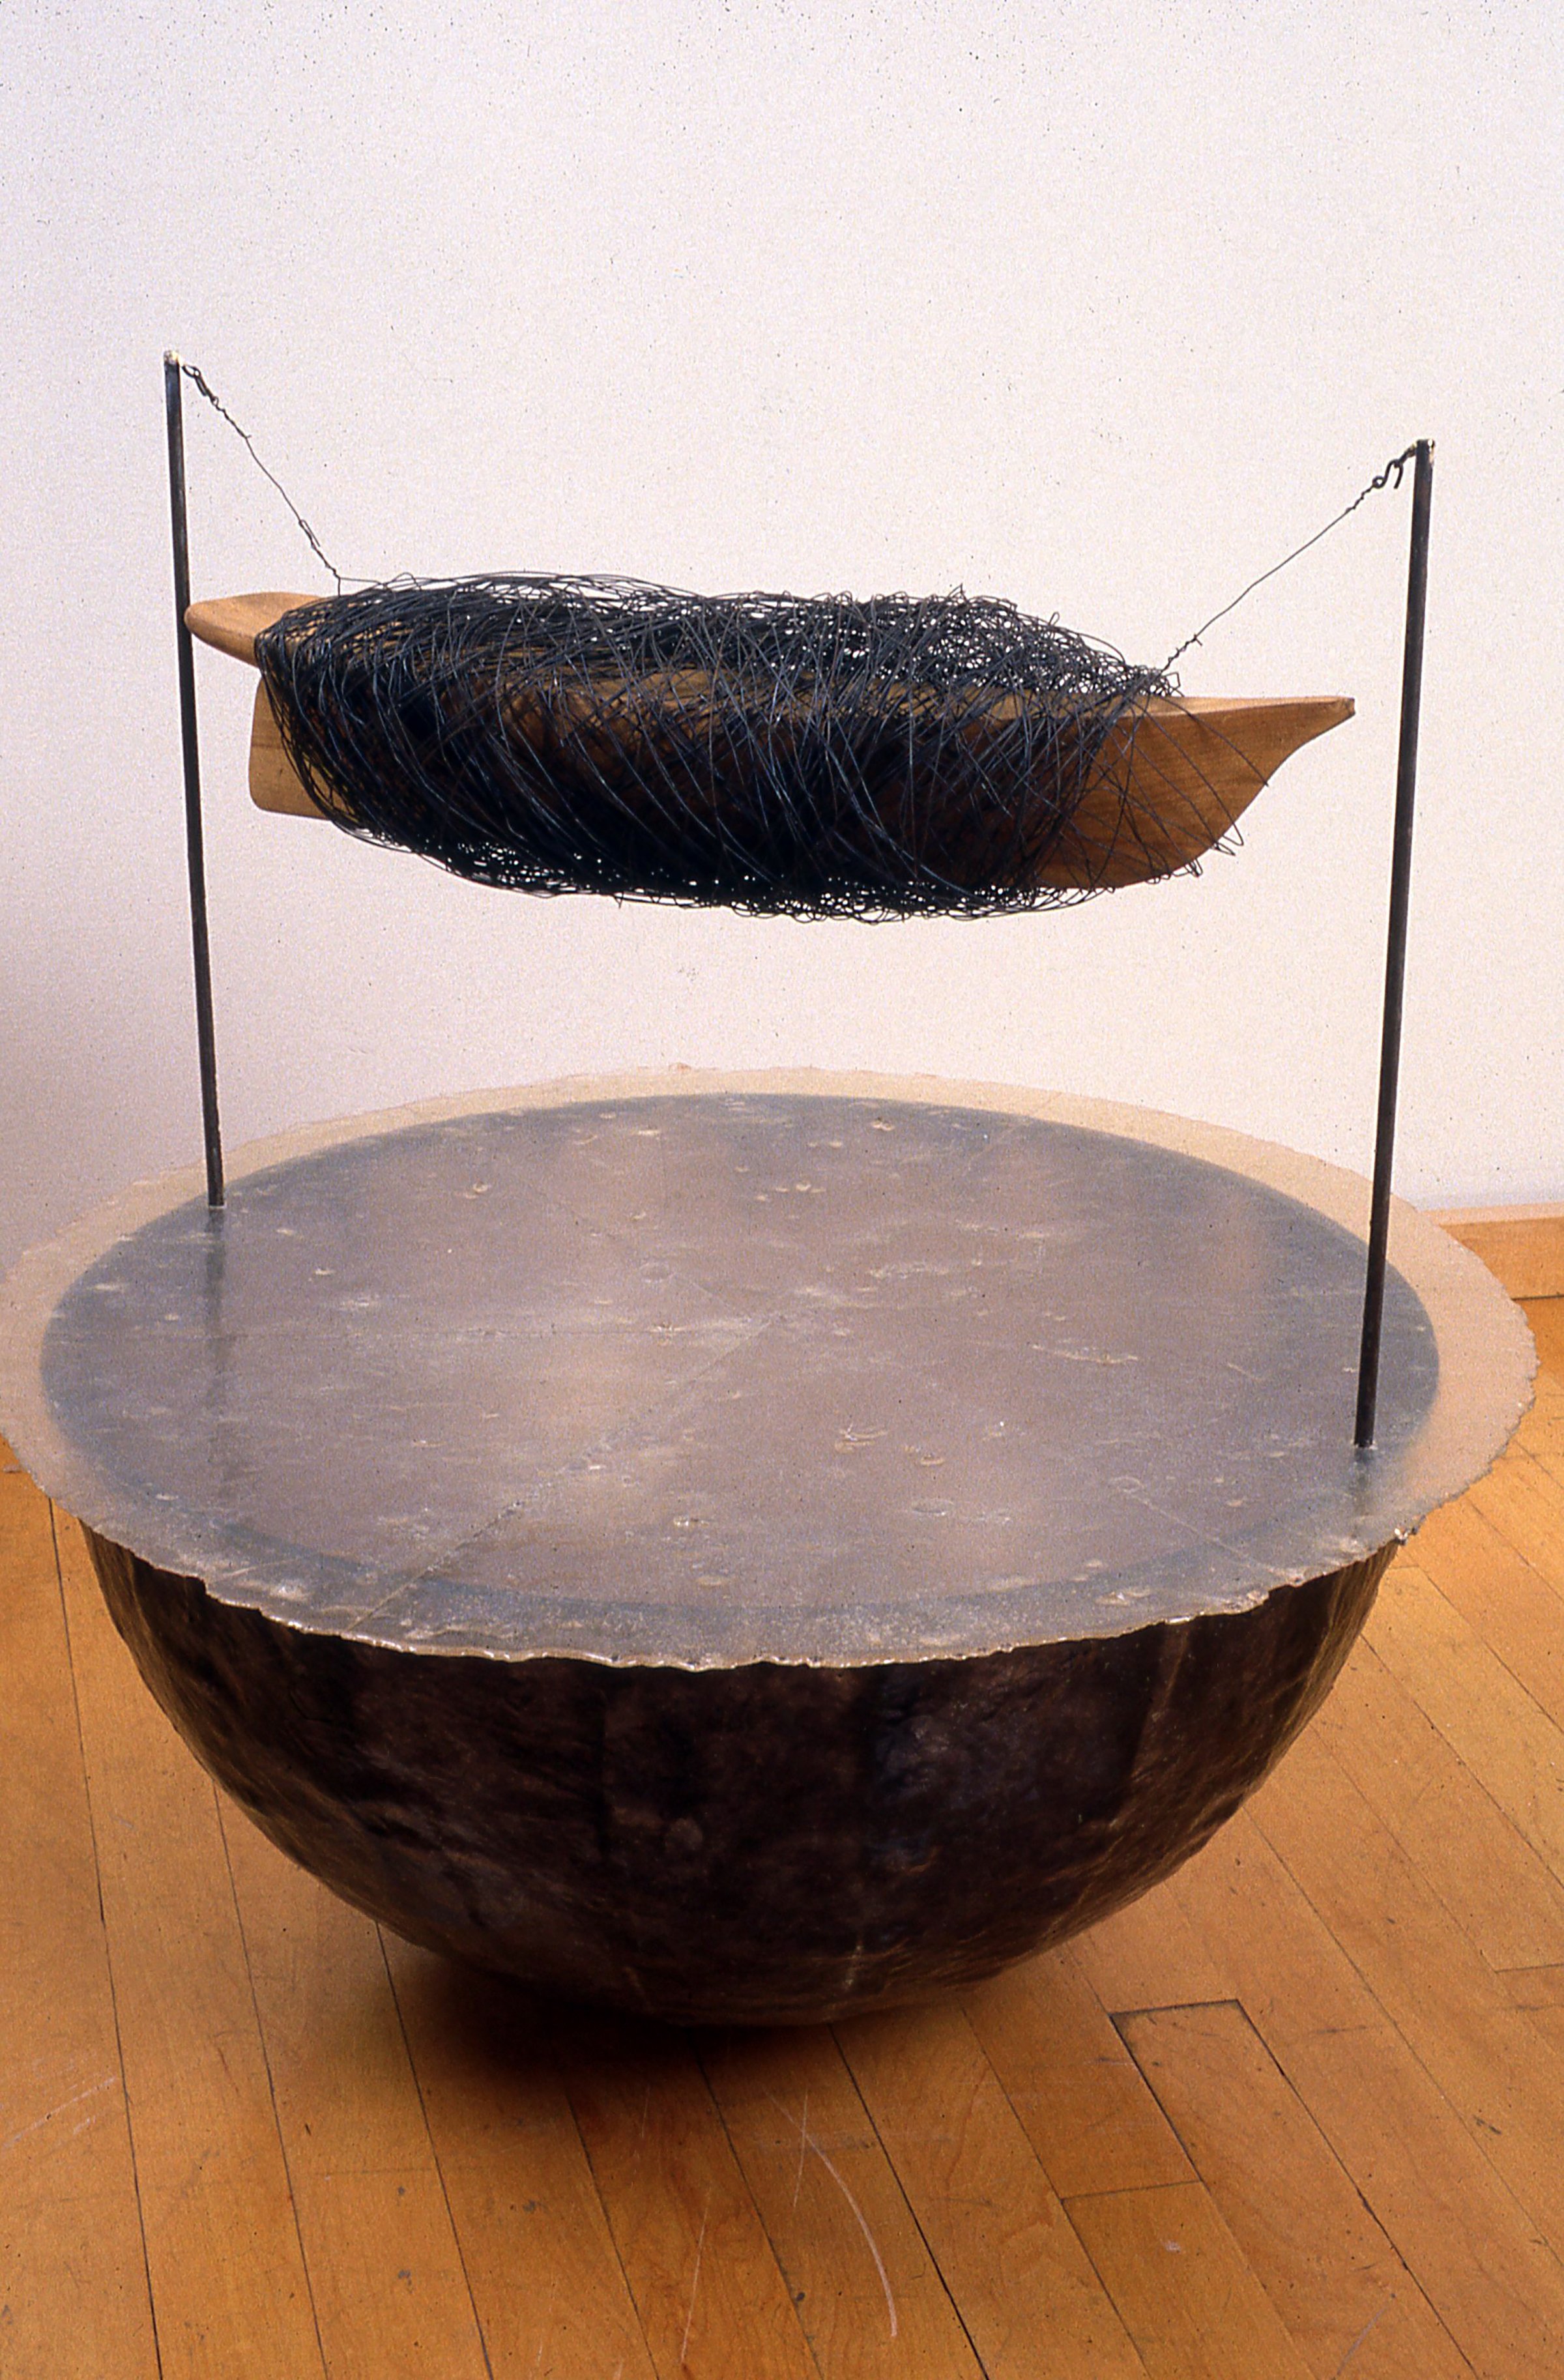  DRYDOCK, freestanding sculpture: 5 feet high, 4 feet in diameter 